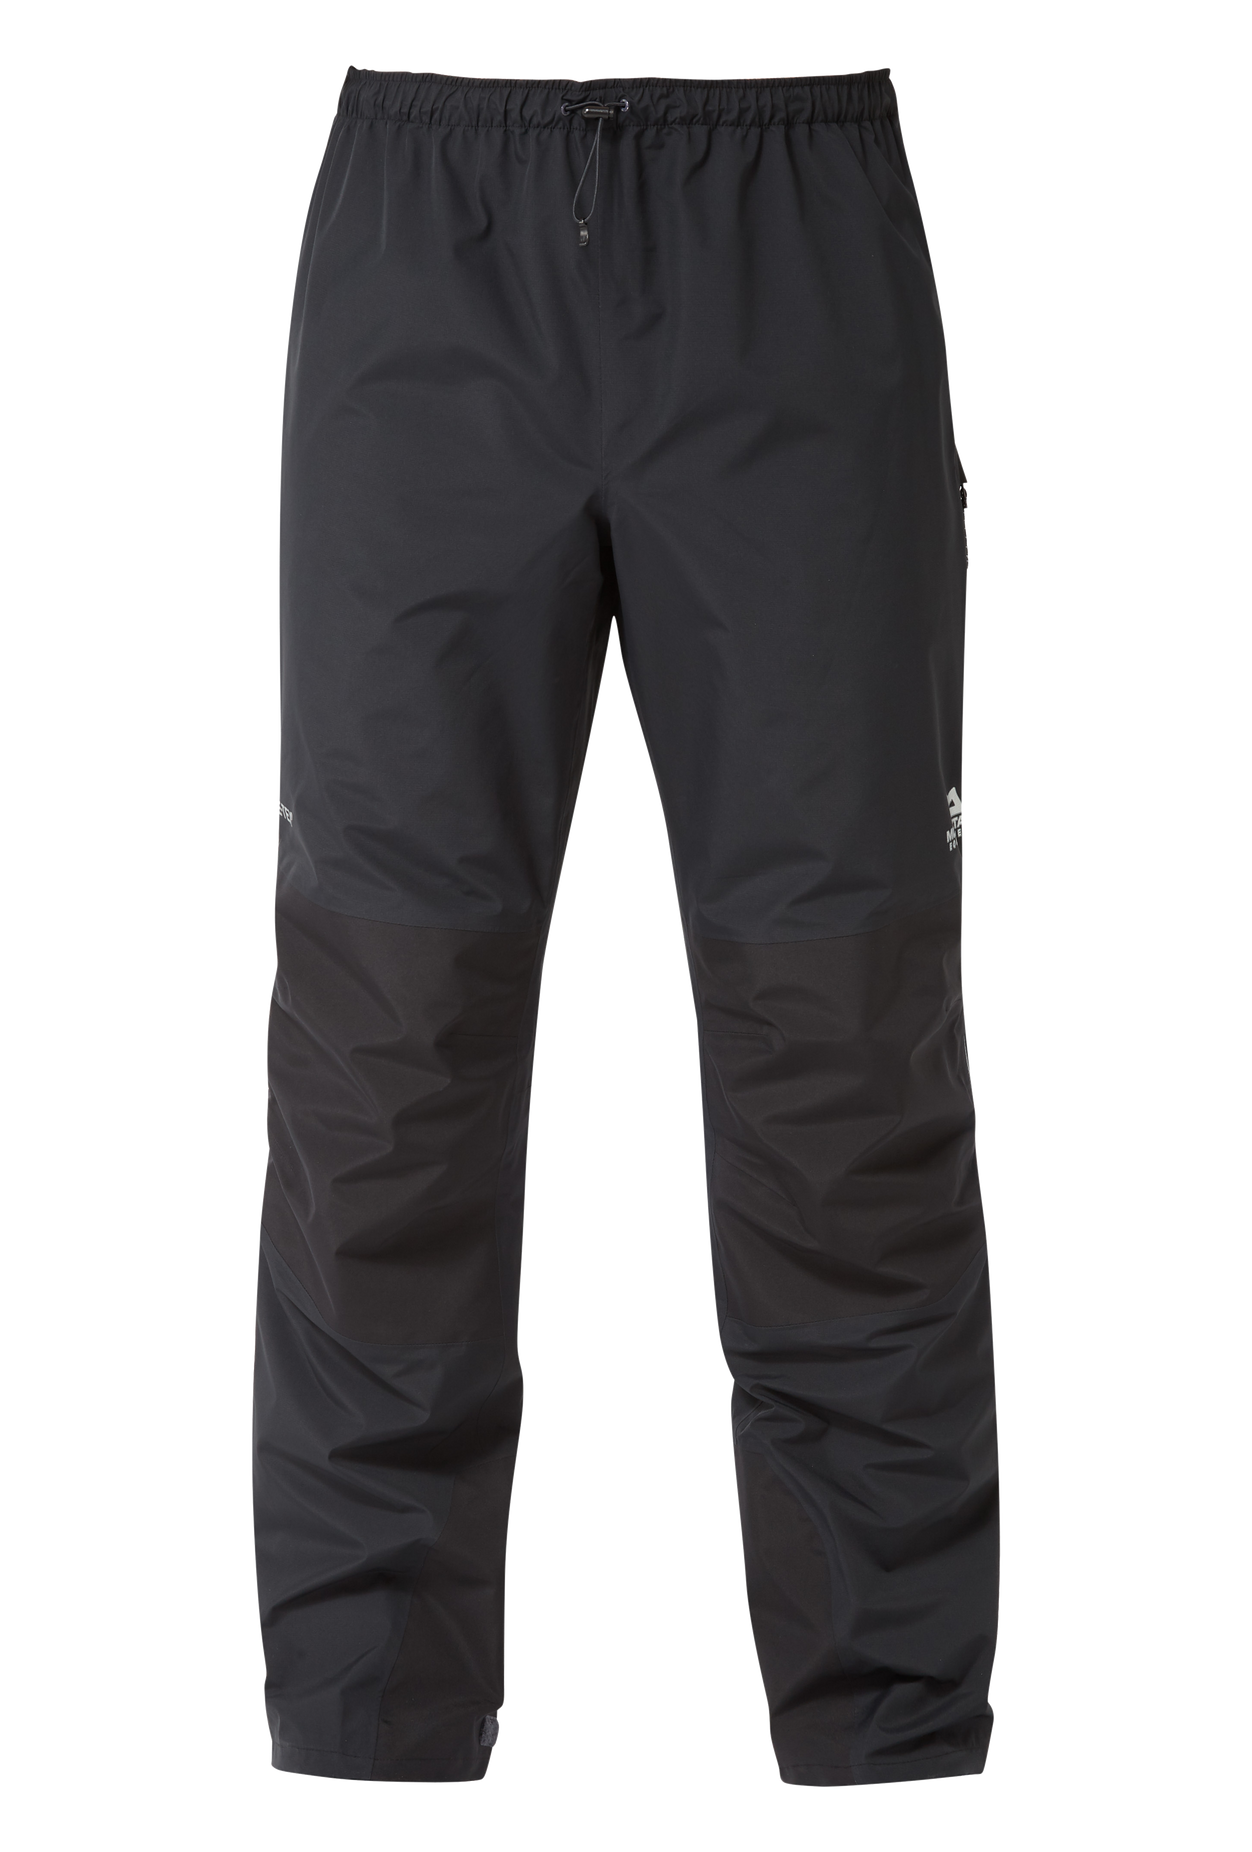 Mountain Equipment pánské nepromokavé kalhoty Saltoro Pant - prodloužené Barva: black, Velikost: M